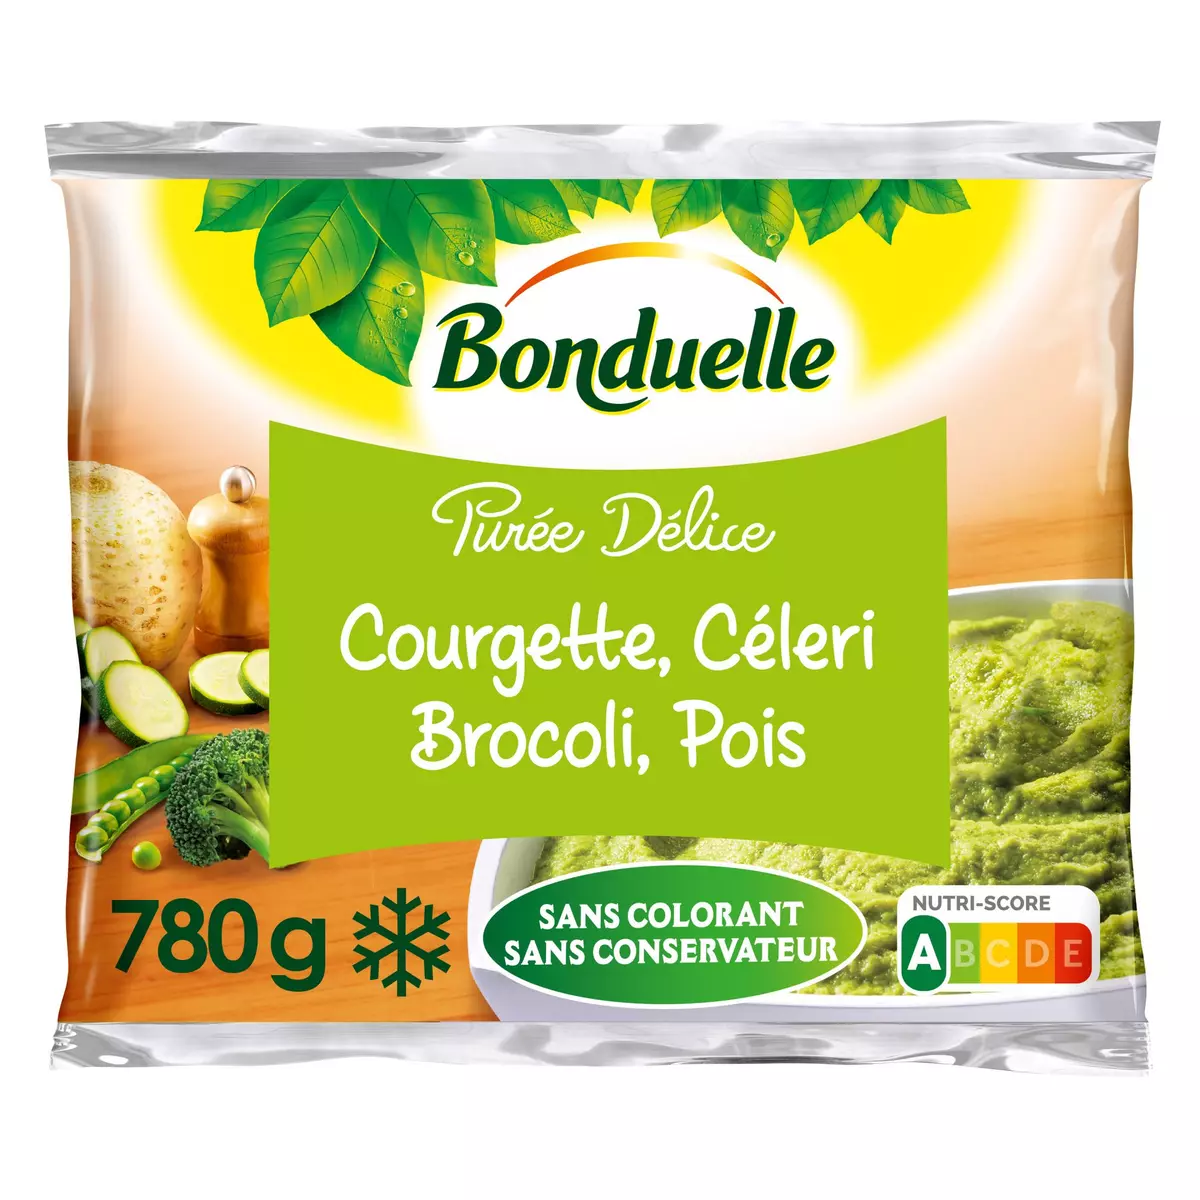 BONDUELLE Purée courgette céleri brocolis et pois 4 portions 780g